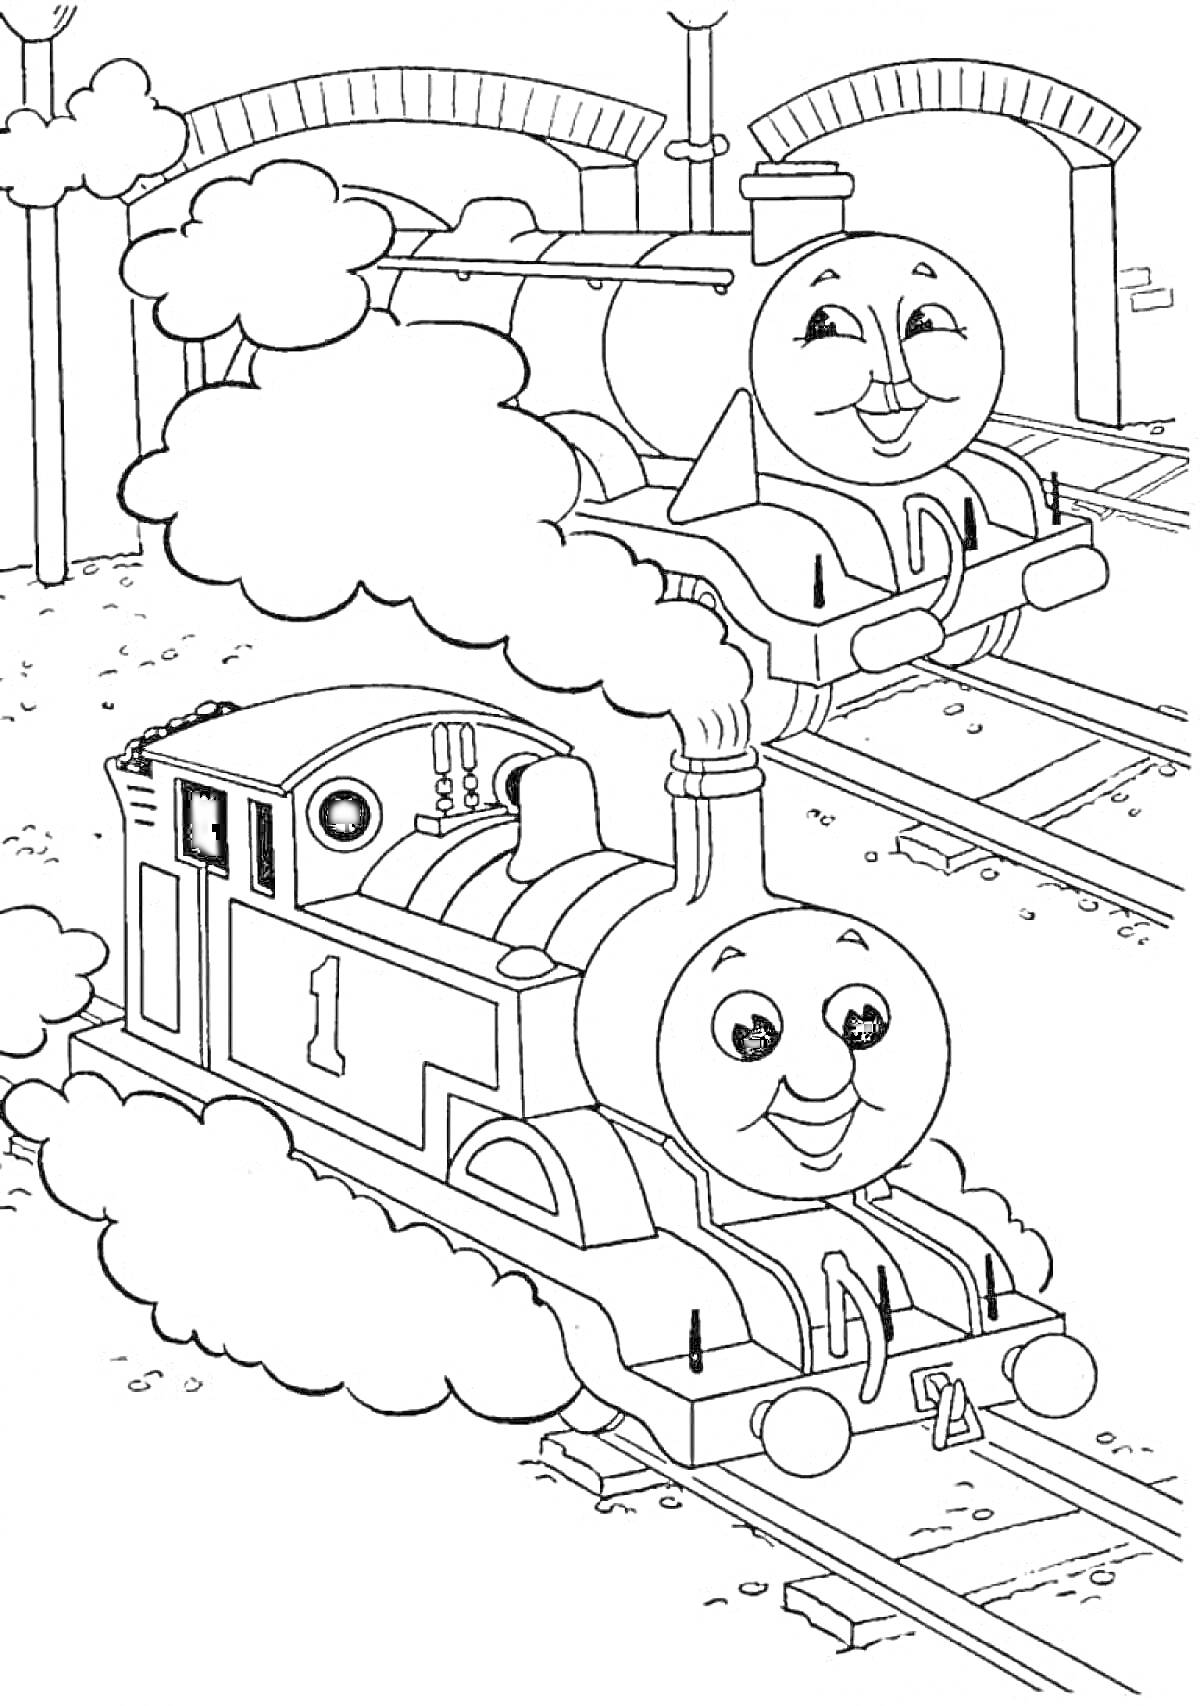 Раскраска Паровозики с лицами на железной дороге под арками